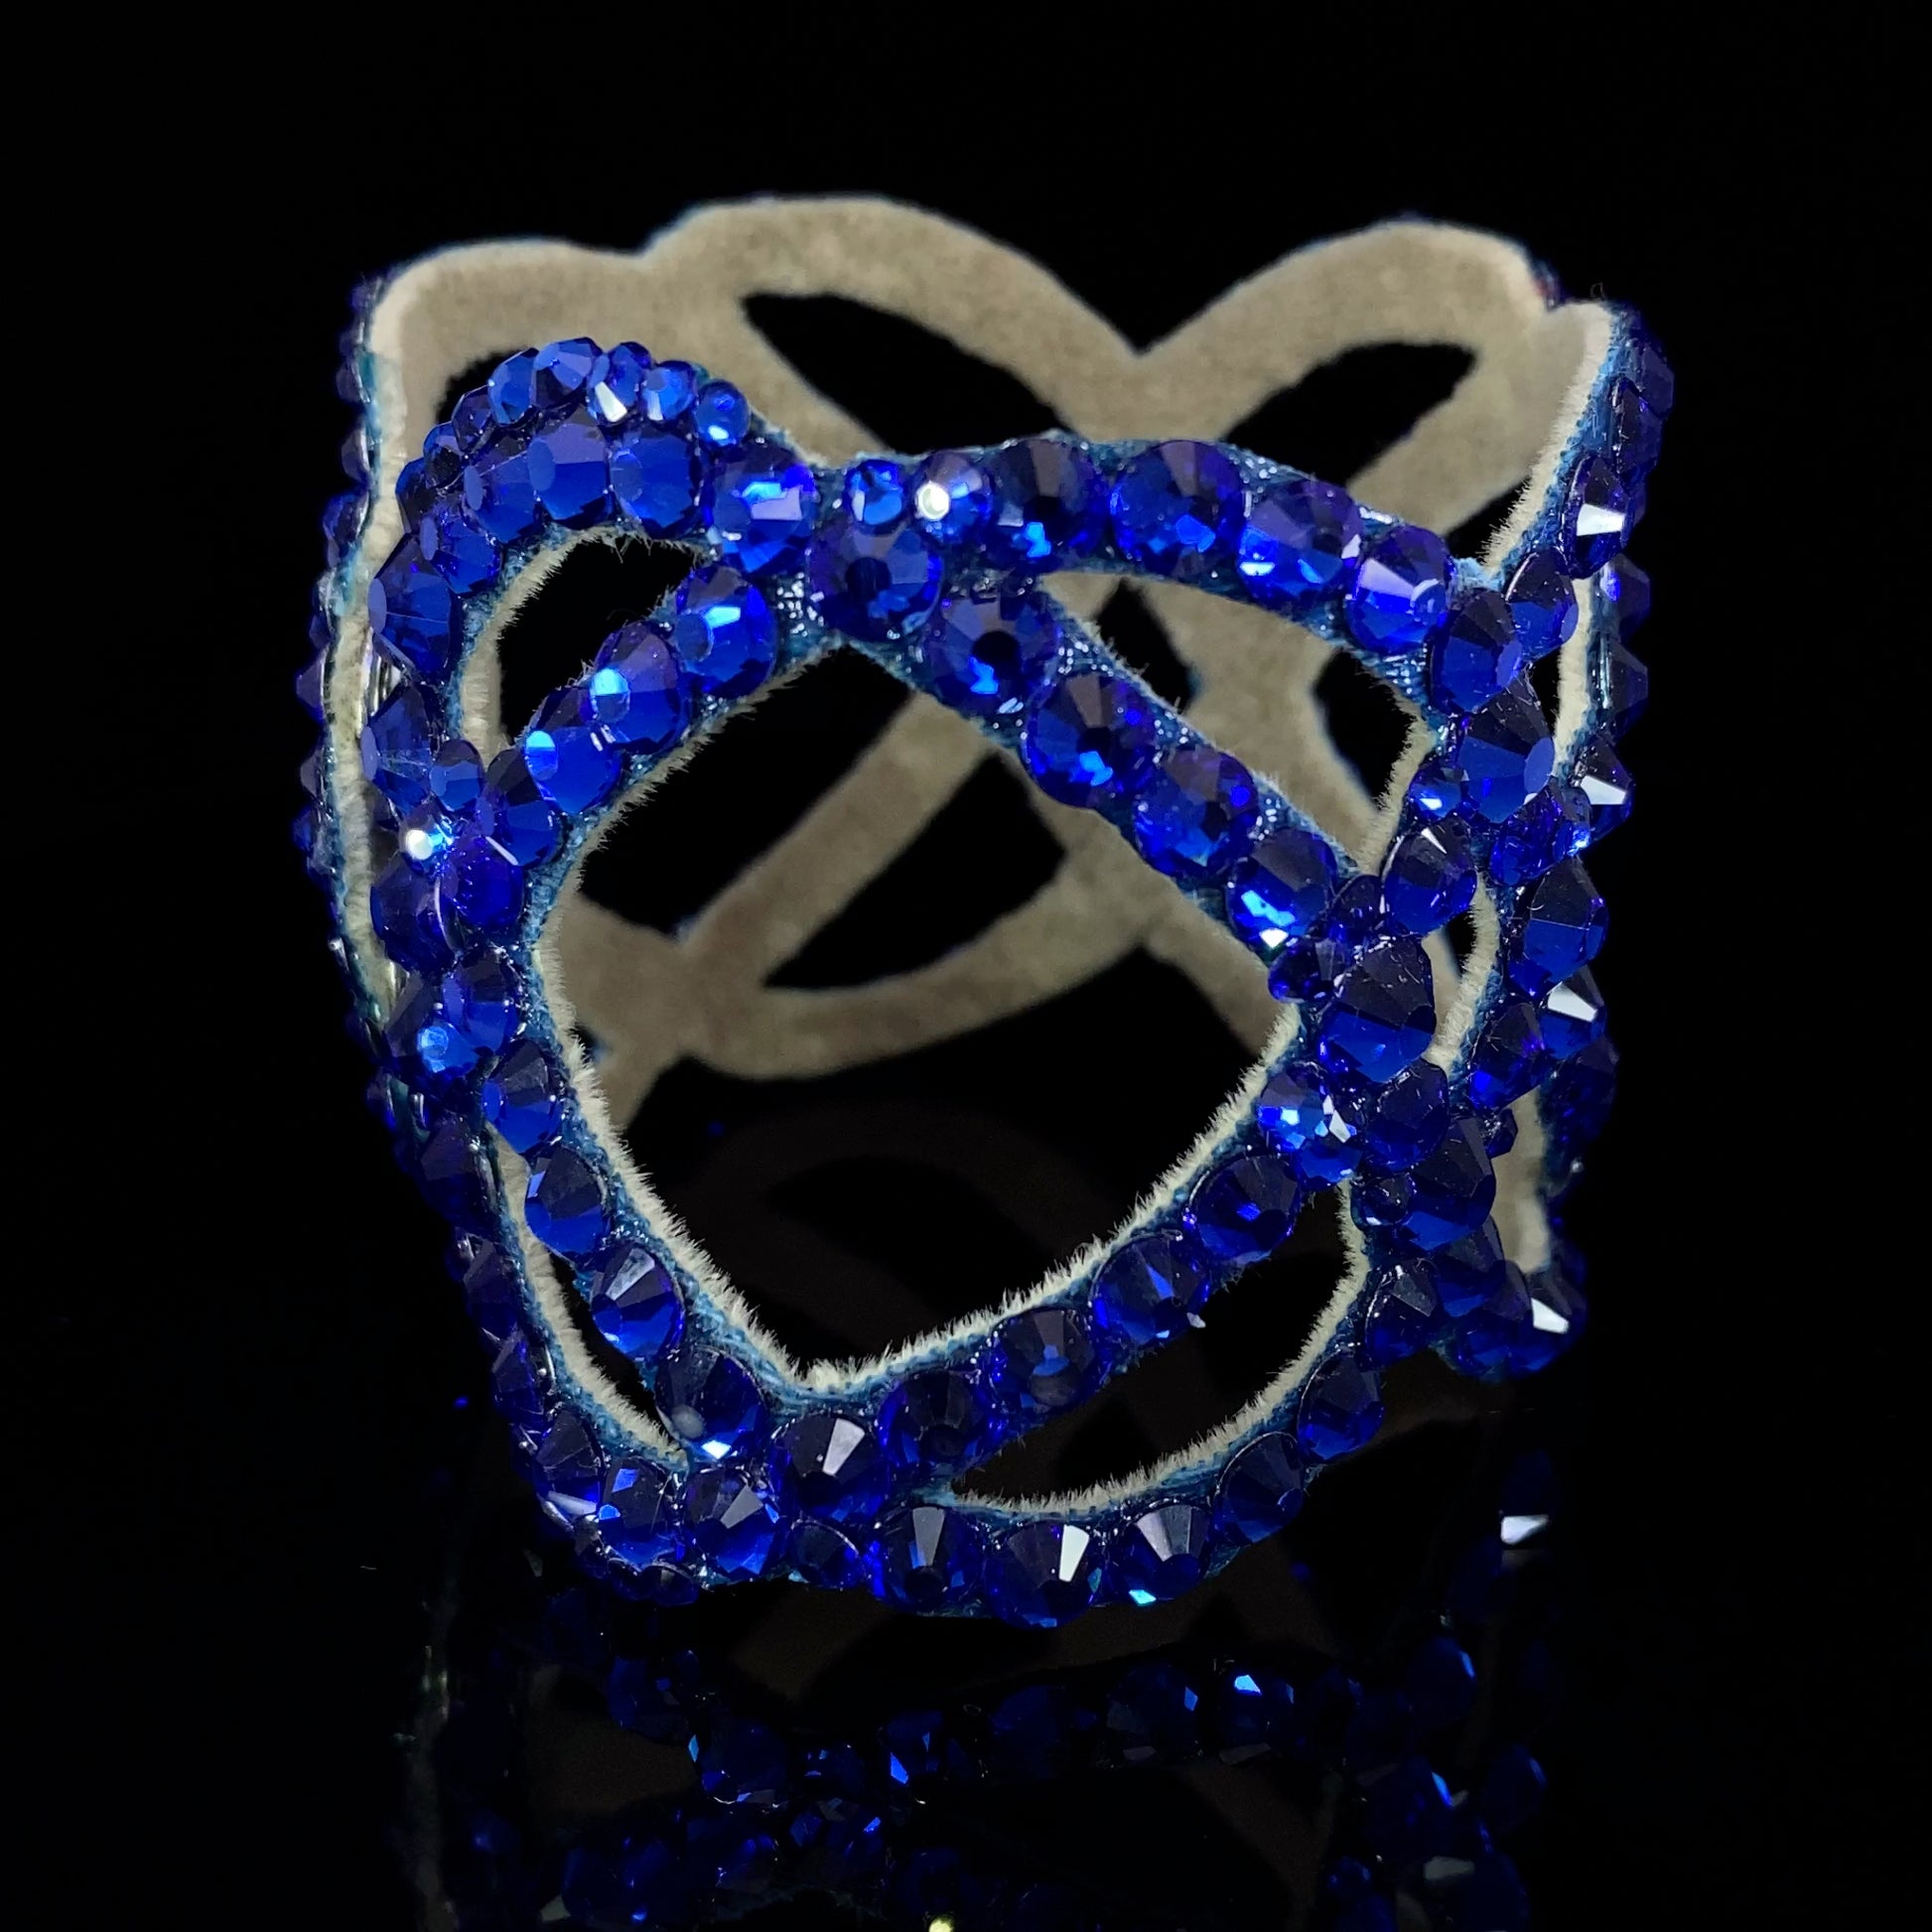 Deep blue stones on ladies' ballroom bracelet